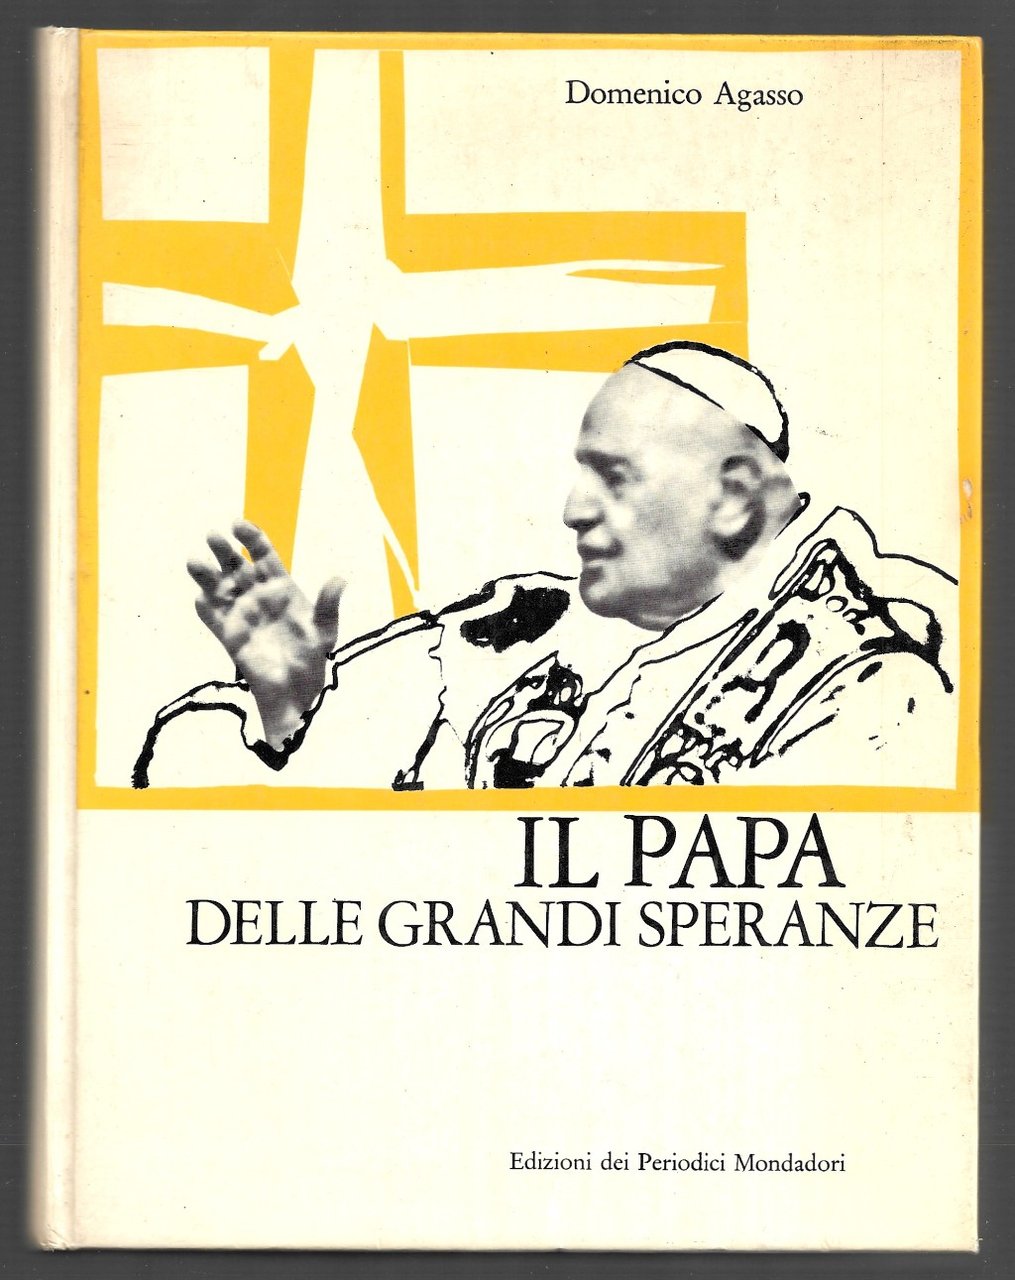 Il papa della grandi speranze